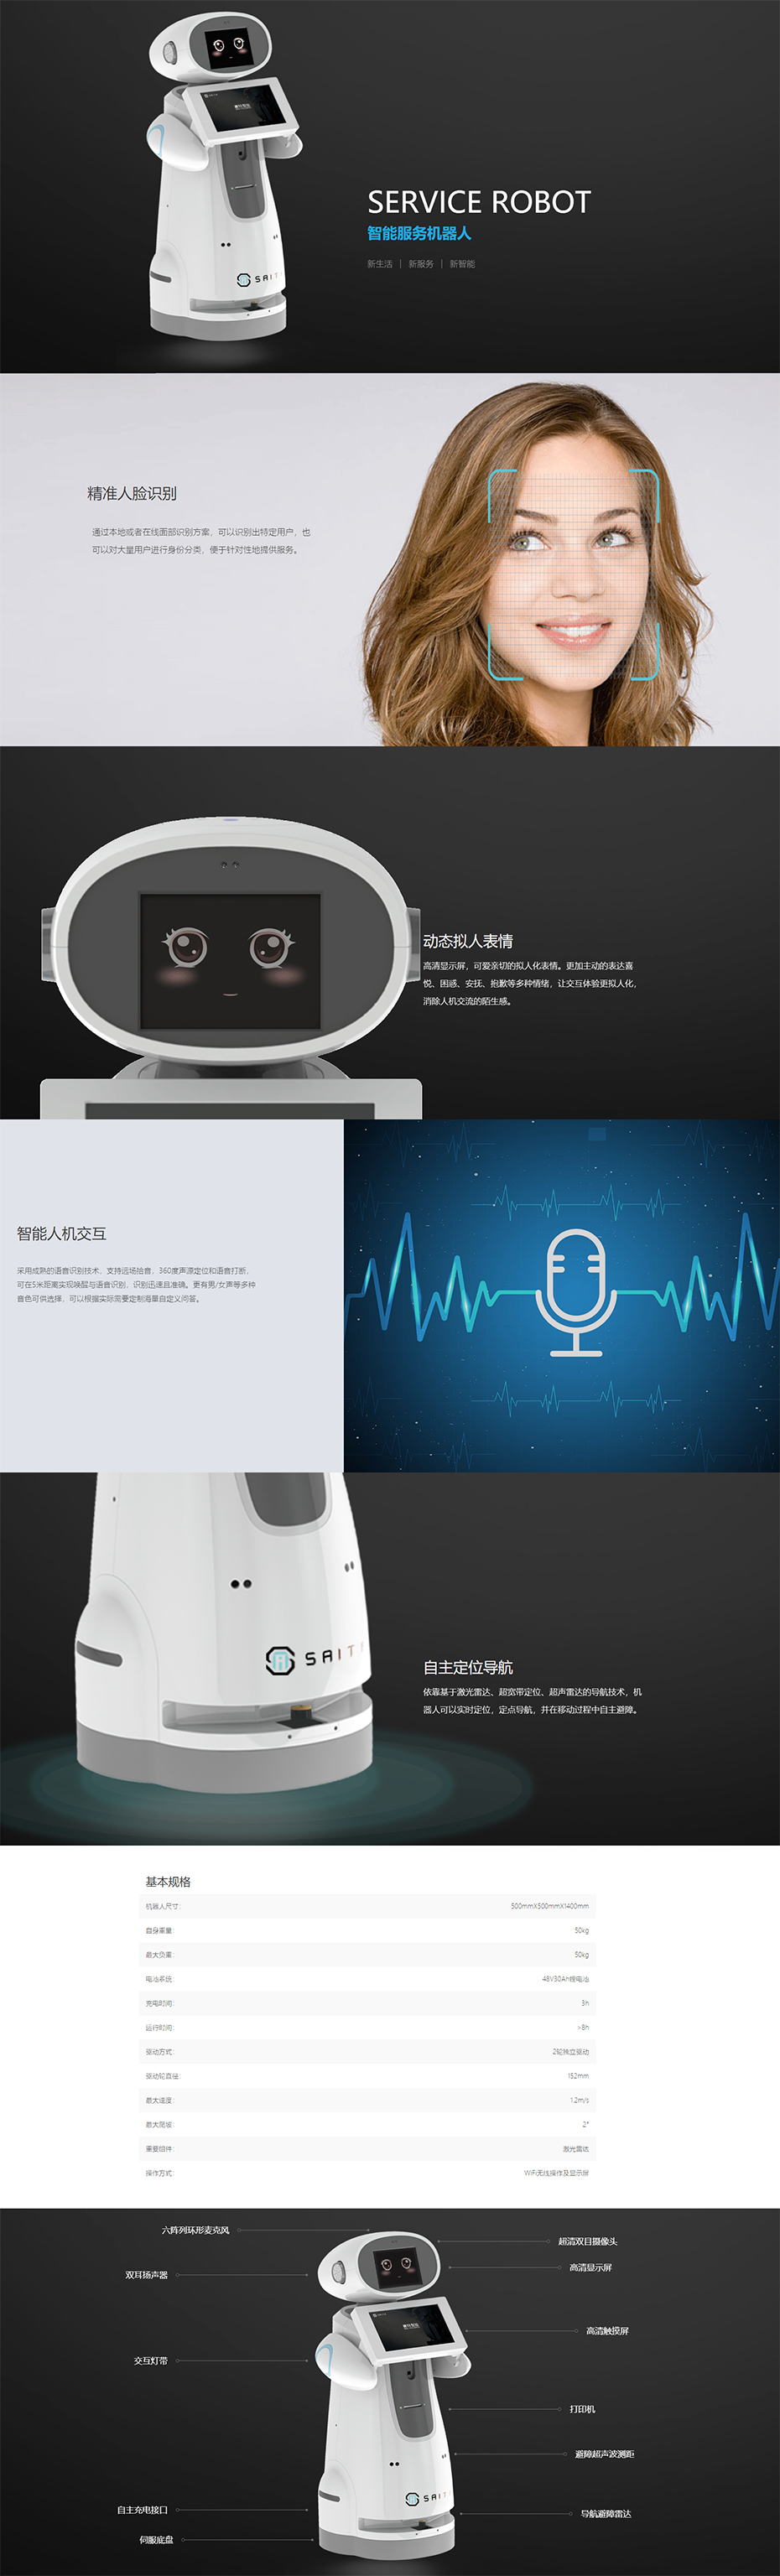 智能服务机器人-广州赛特智能科技有限公司.jpg